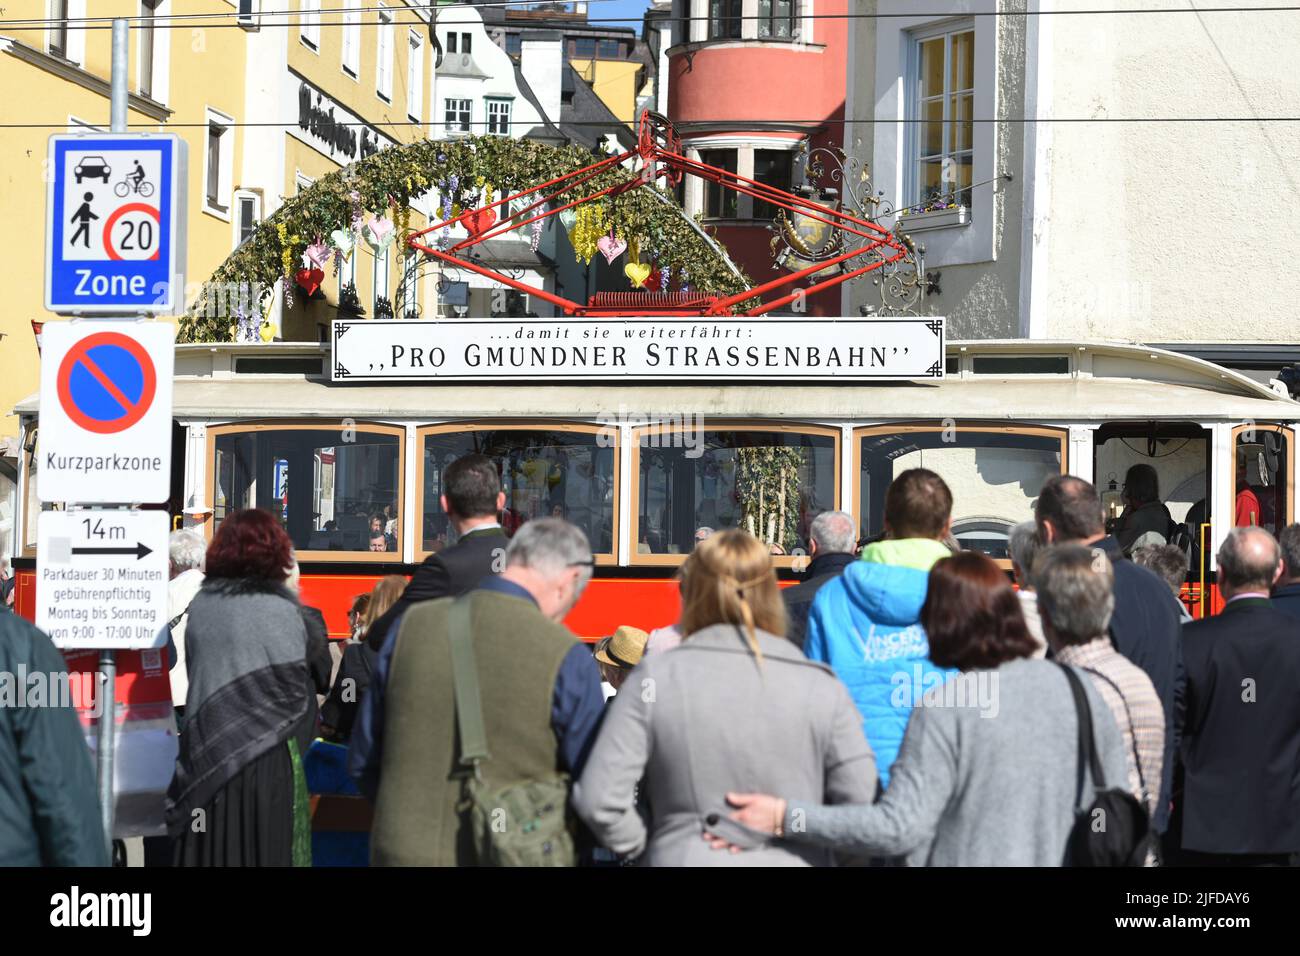 Nostalgie-Straßenbahn in Gmunden (Salzkammergut, Oberösterreich, Österreich) - Nostalgic tram in Gmunden (Salzkammergut, Upper Austria, Austria) - Stock Photo